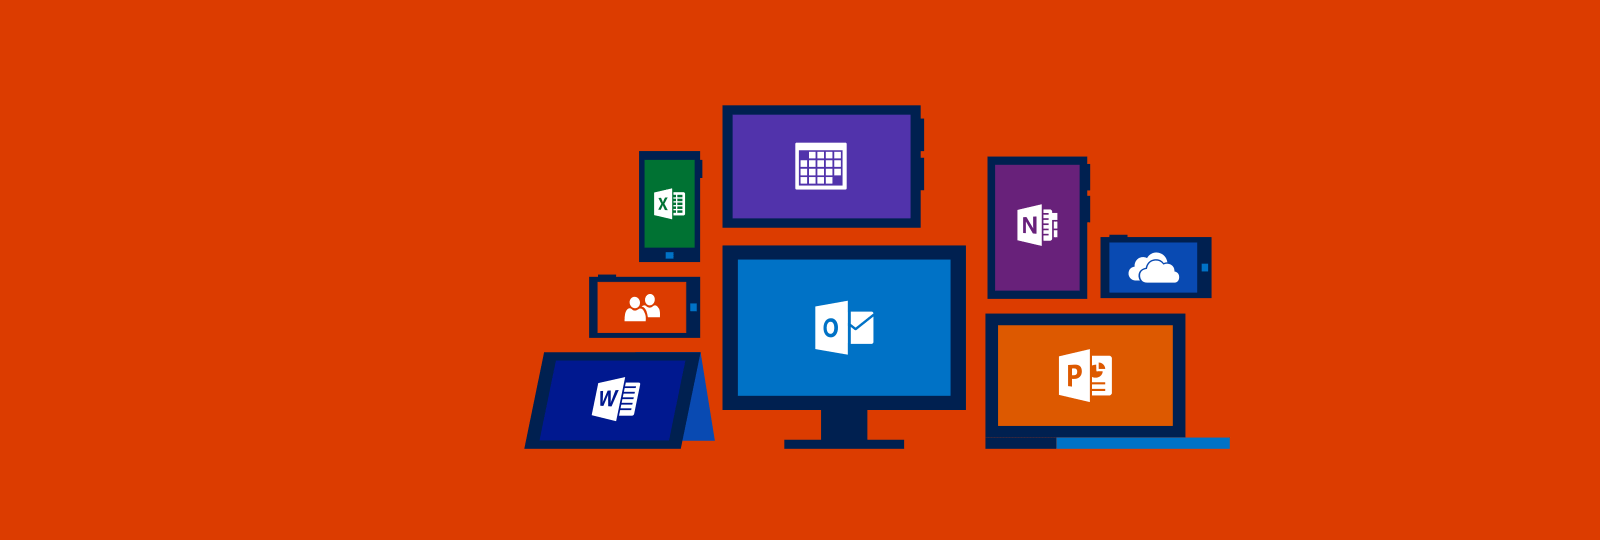 Office 365 devient Microsoft 365 et fait le plein de nouveautés